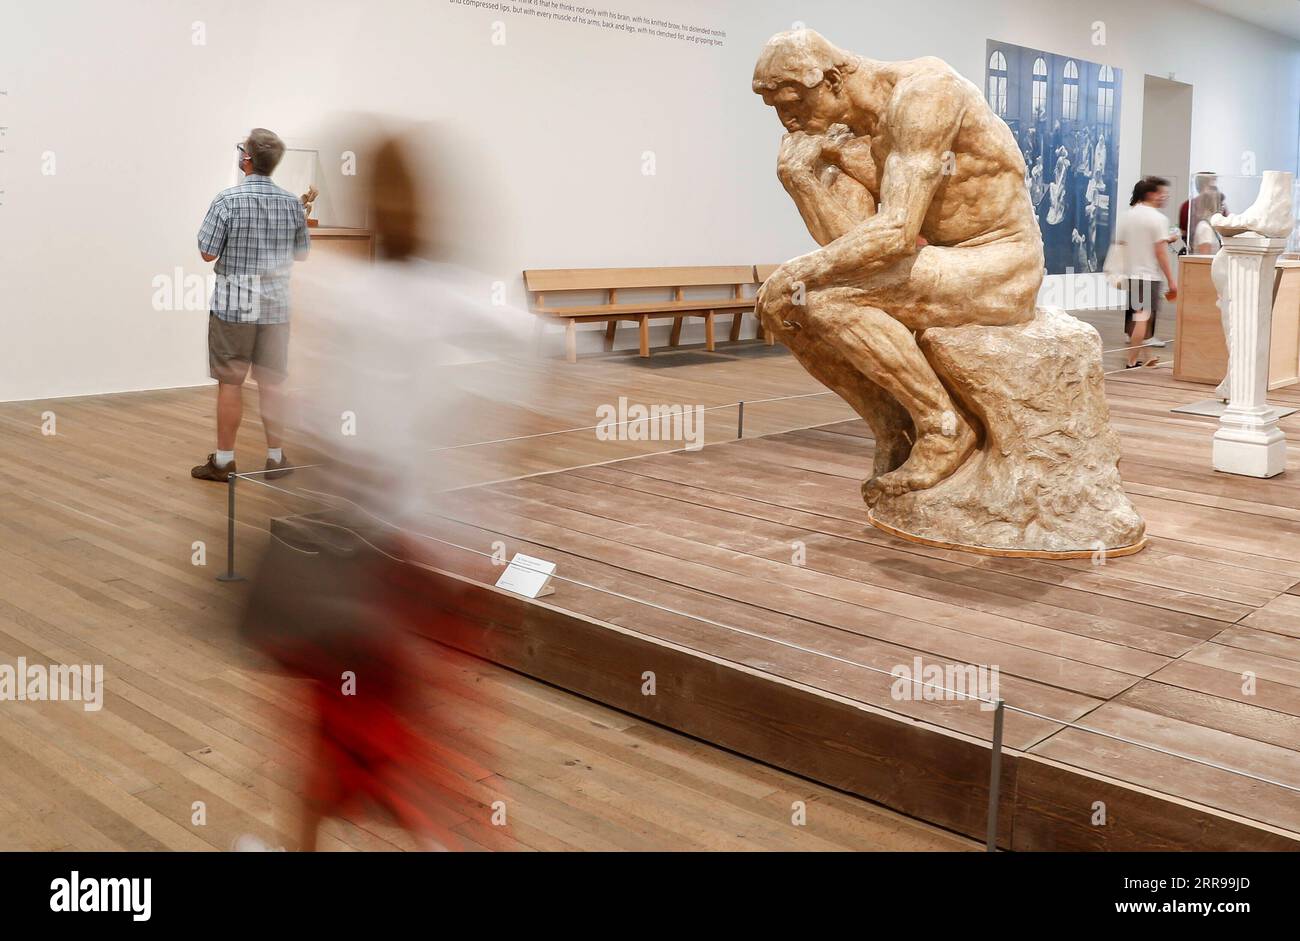 210604 -- LONDRA, 4 giugno 2021 -- People visit the EY Exhibition: The Making of Rodin Exhibition alla Tate Modern di Londra, in Gran Bretagna, il 3 giugno 2021. BRITAIN-LONDON-TATE MODERN-RODIN-EXHIBITION HANXYAN PUBLICATIONXNOTXINXCHN Foto Stock